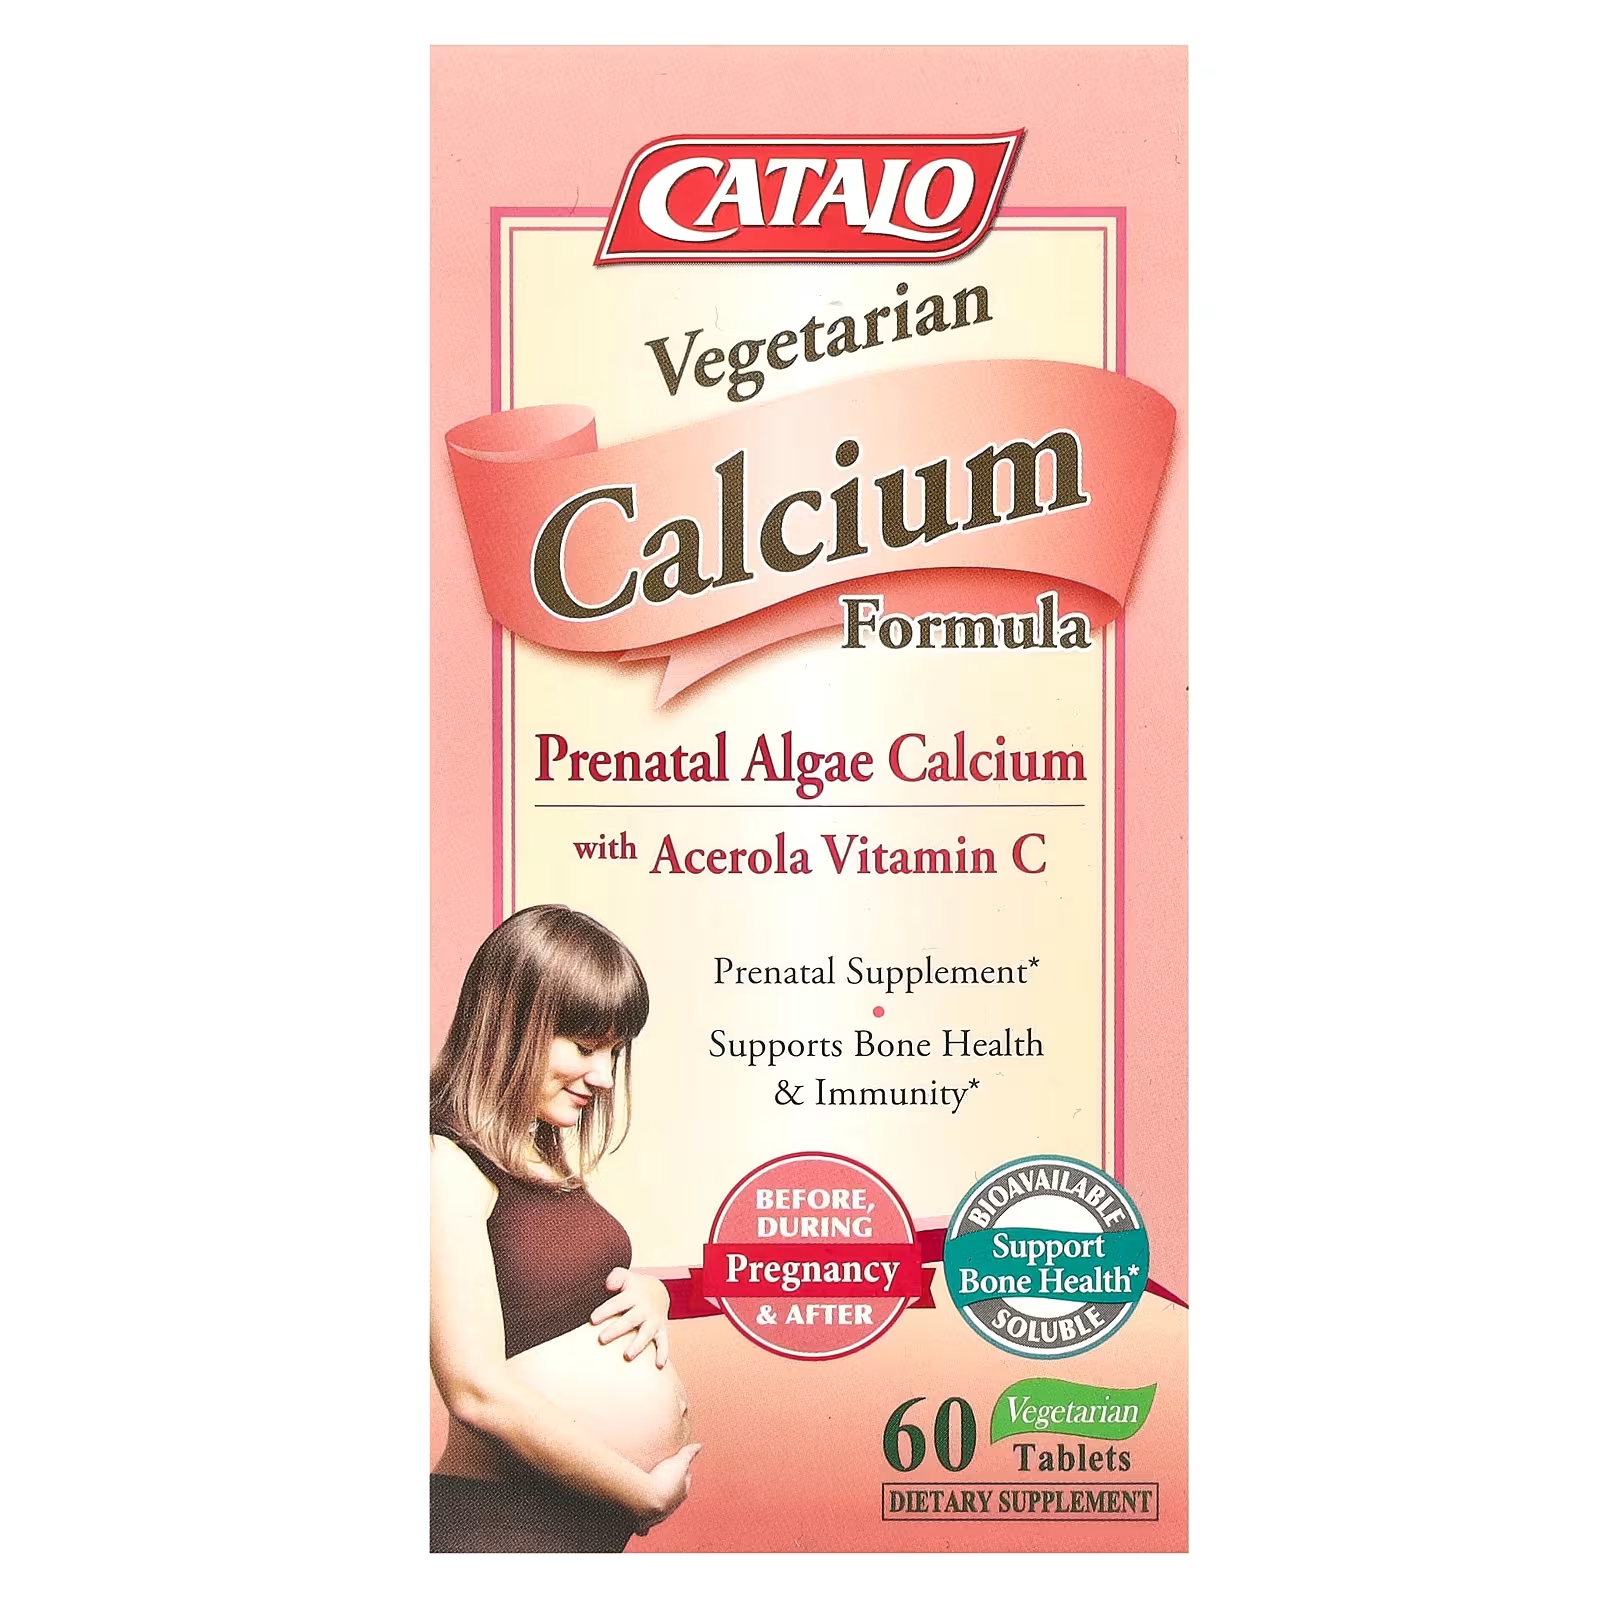 Вегетарианская формула кальция Catalo Naturals для беременных с витамином С, 60 вегетарианских таблеток формула с витамином c catalo naturals для детей 60 жевательных таблеток